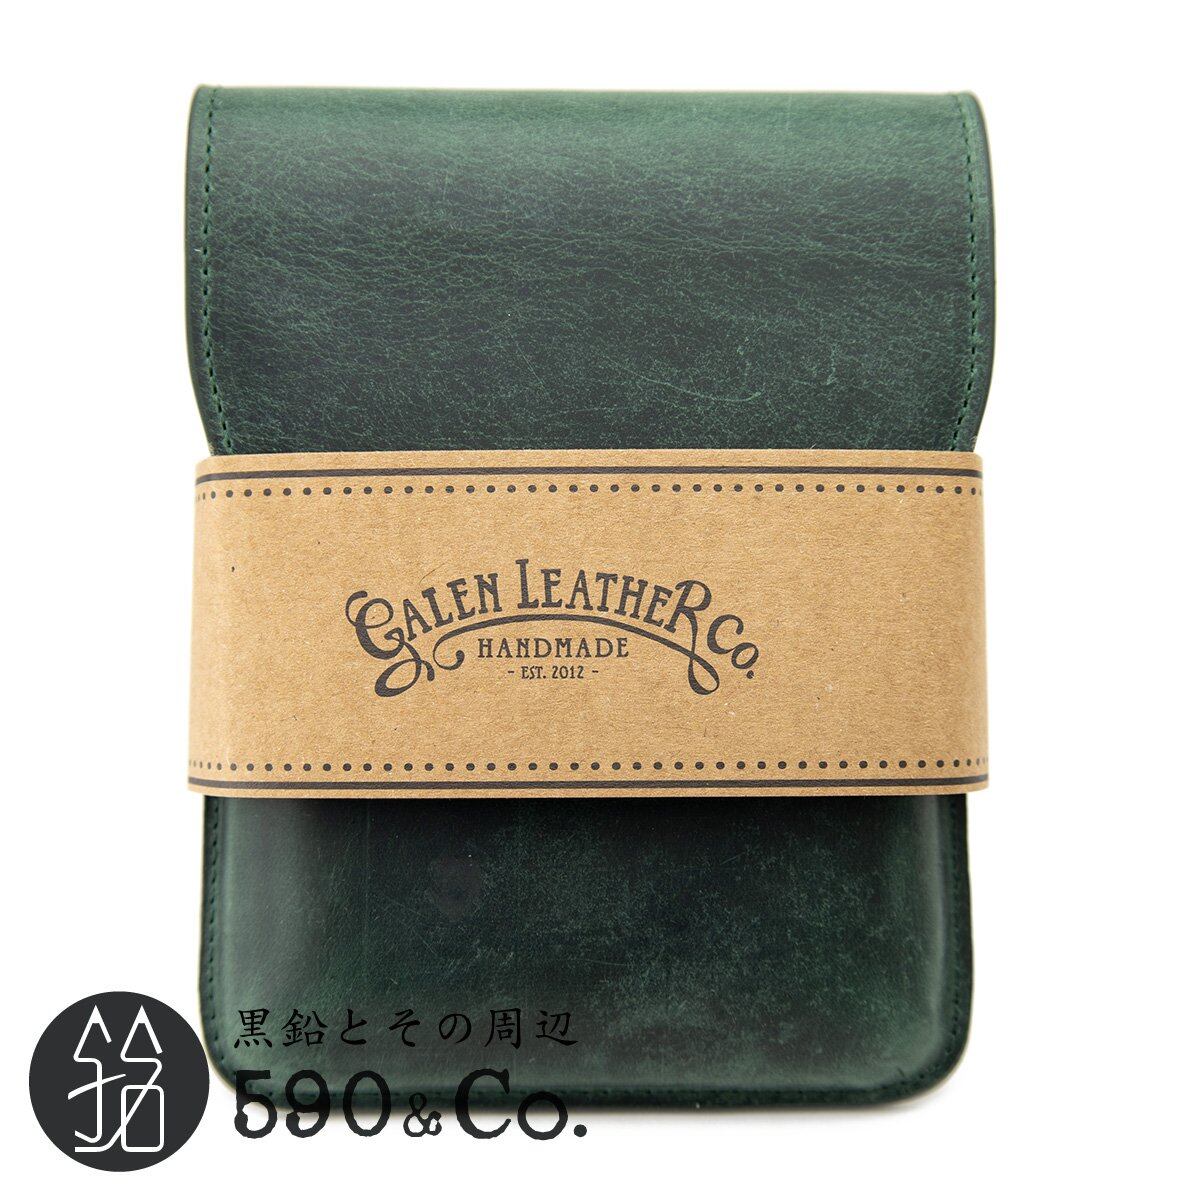 Galen Leather/ガレンレザー】フラップペンケース・5本用 (クレイジーホースグリーン) 590Co.